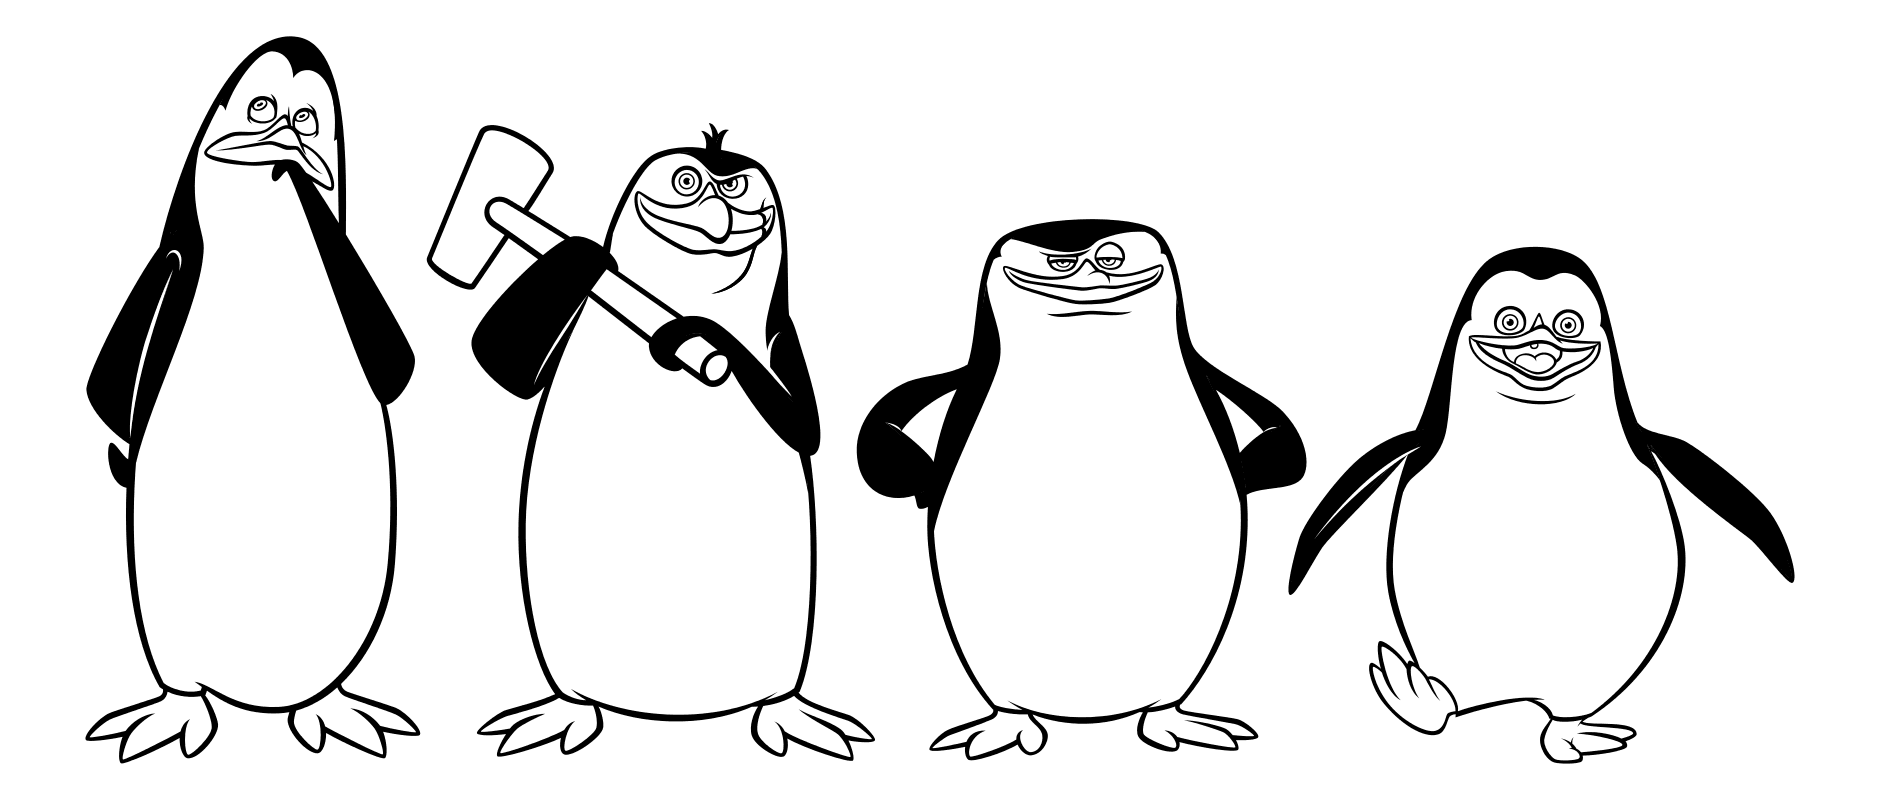 Раскраска - Пингвины Мадагаскара - Пингвины Ковальски, Рико, Шкипер и Рядовой